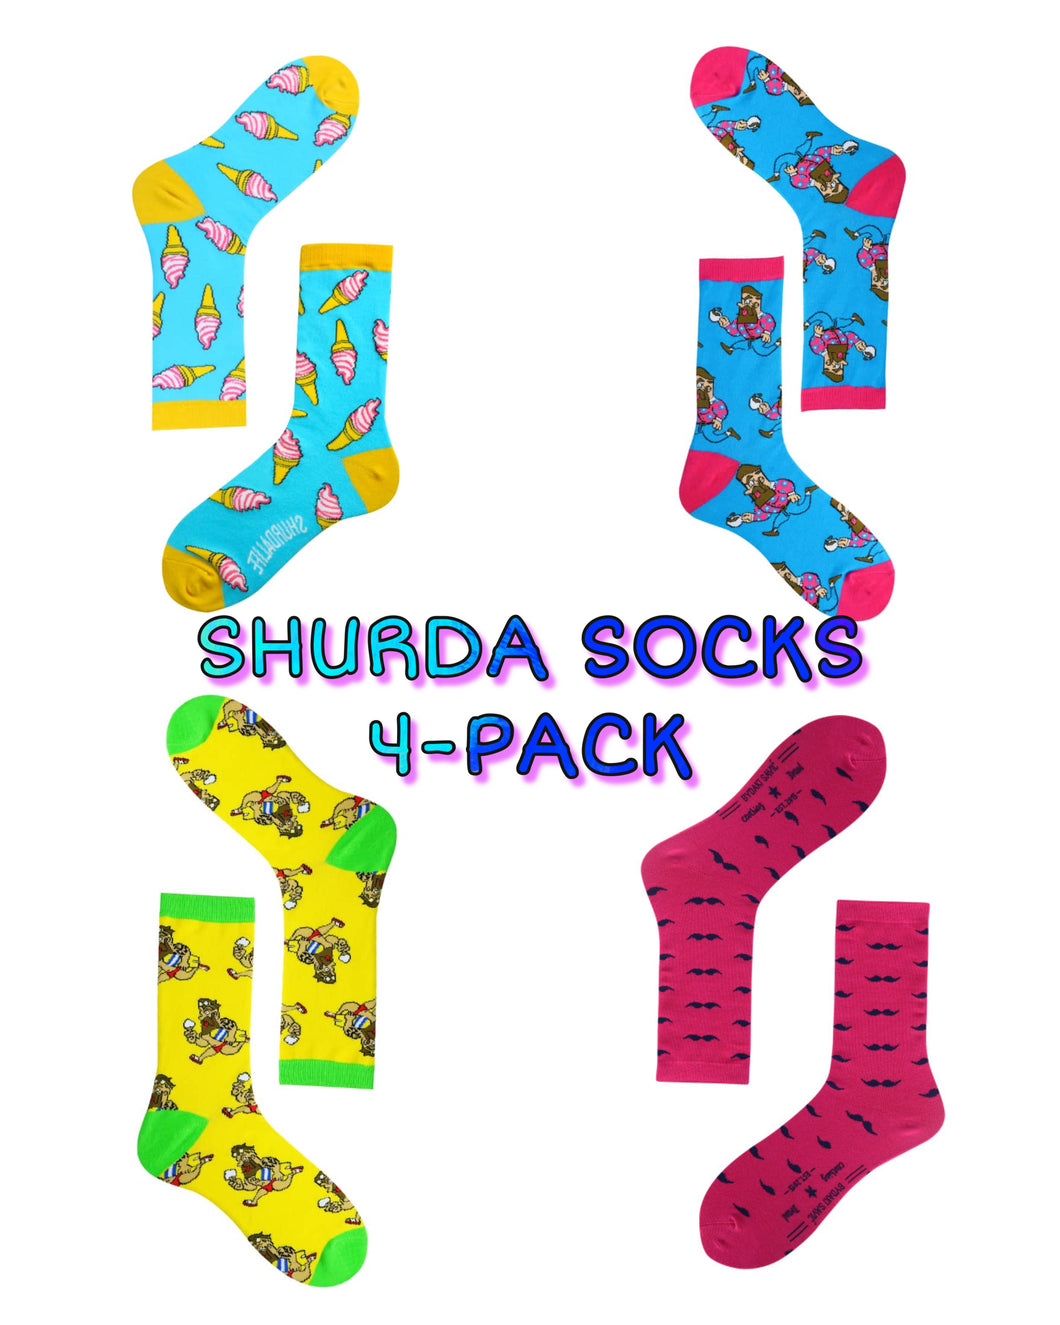 SHURDA SOCKS 4-PACK